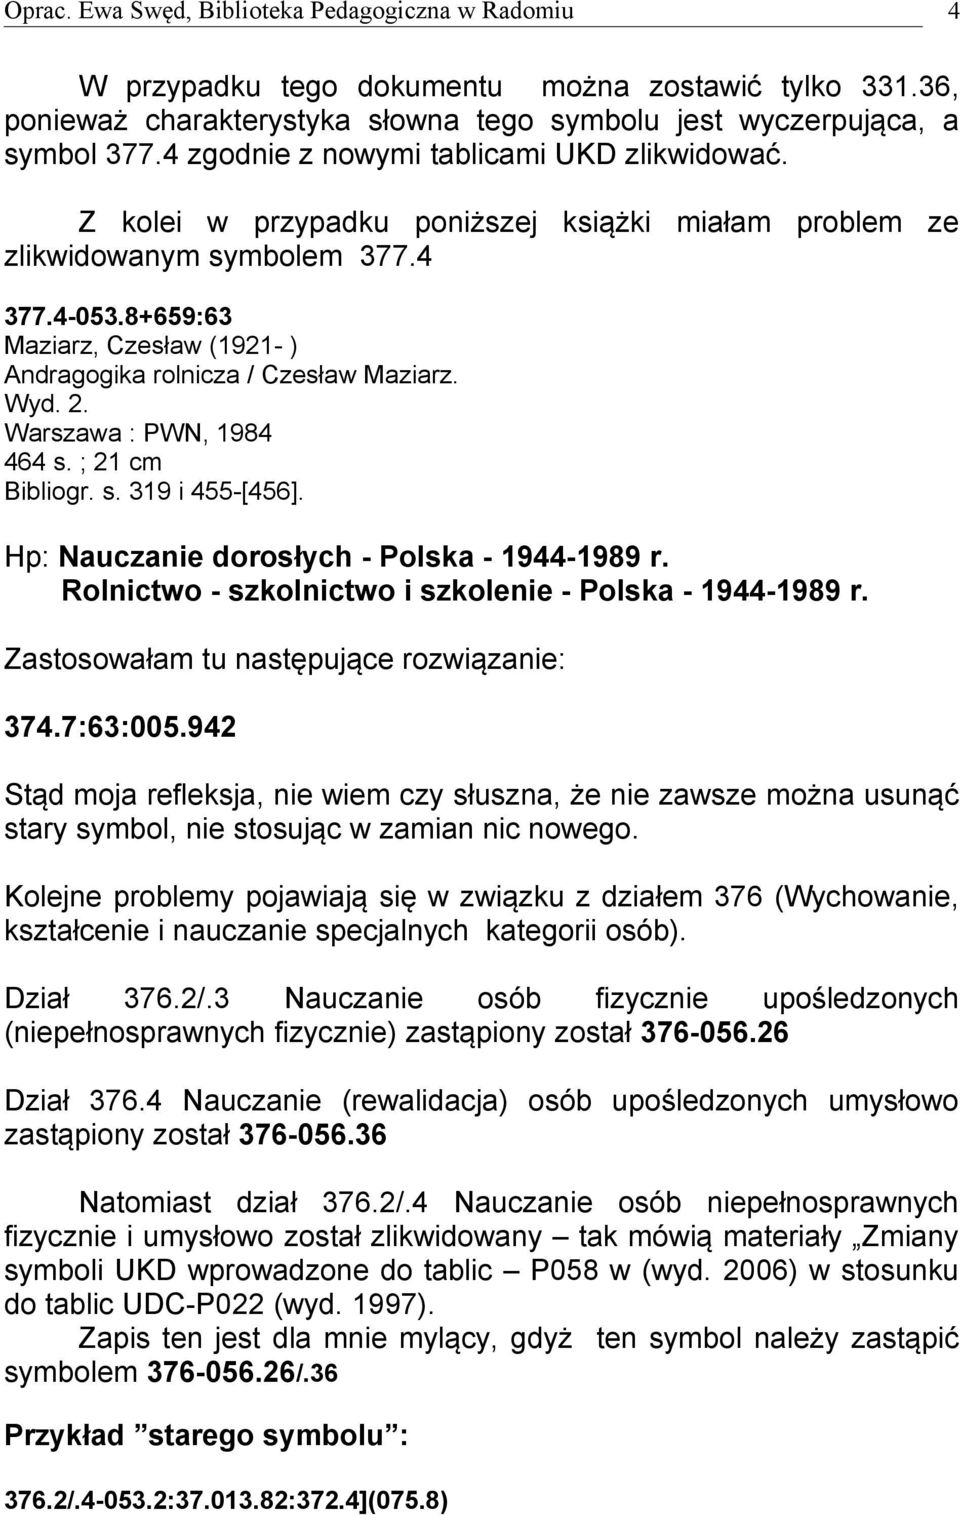 Warszawa : PWN, 1984 464 s. ; 21 cm Bibliogr. s. 319 i 455-[456]. Hp: Nauczanie dorosłych - Polska - 1944-1989 r. Rolnictwo - szkolnictwo i szkolenie - Polska - 1944-1989 r.